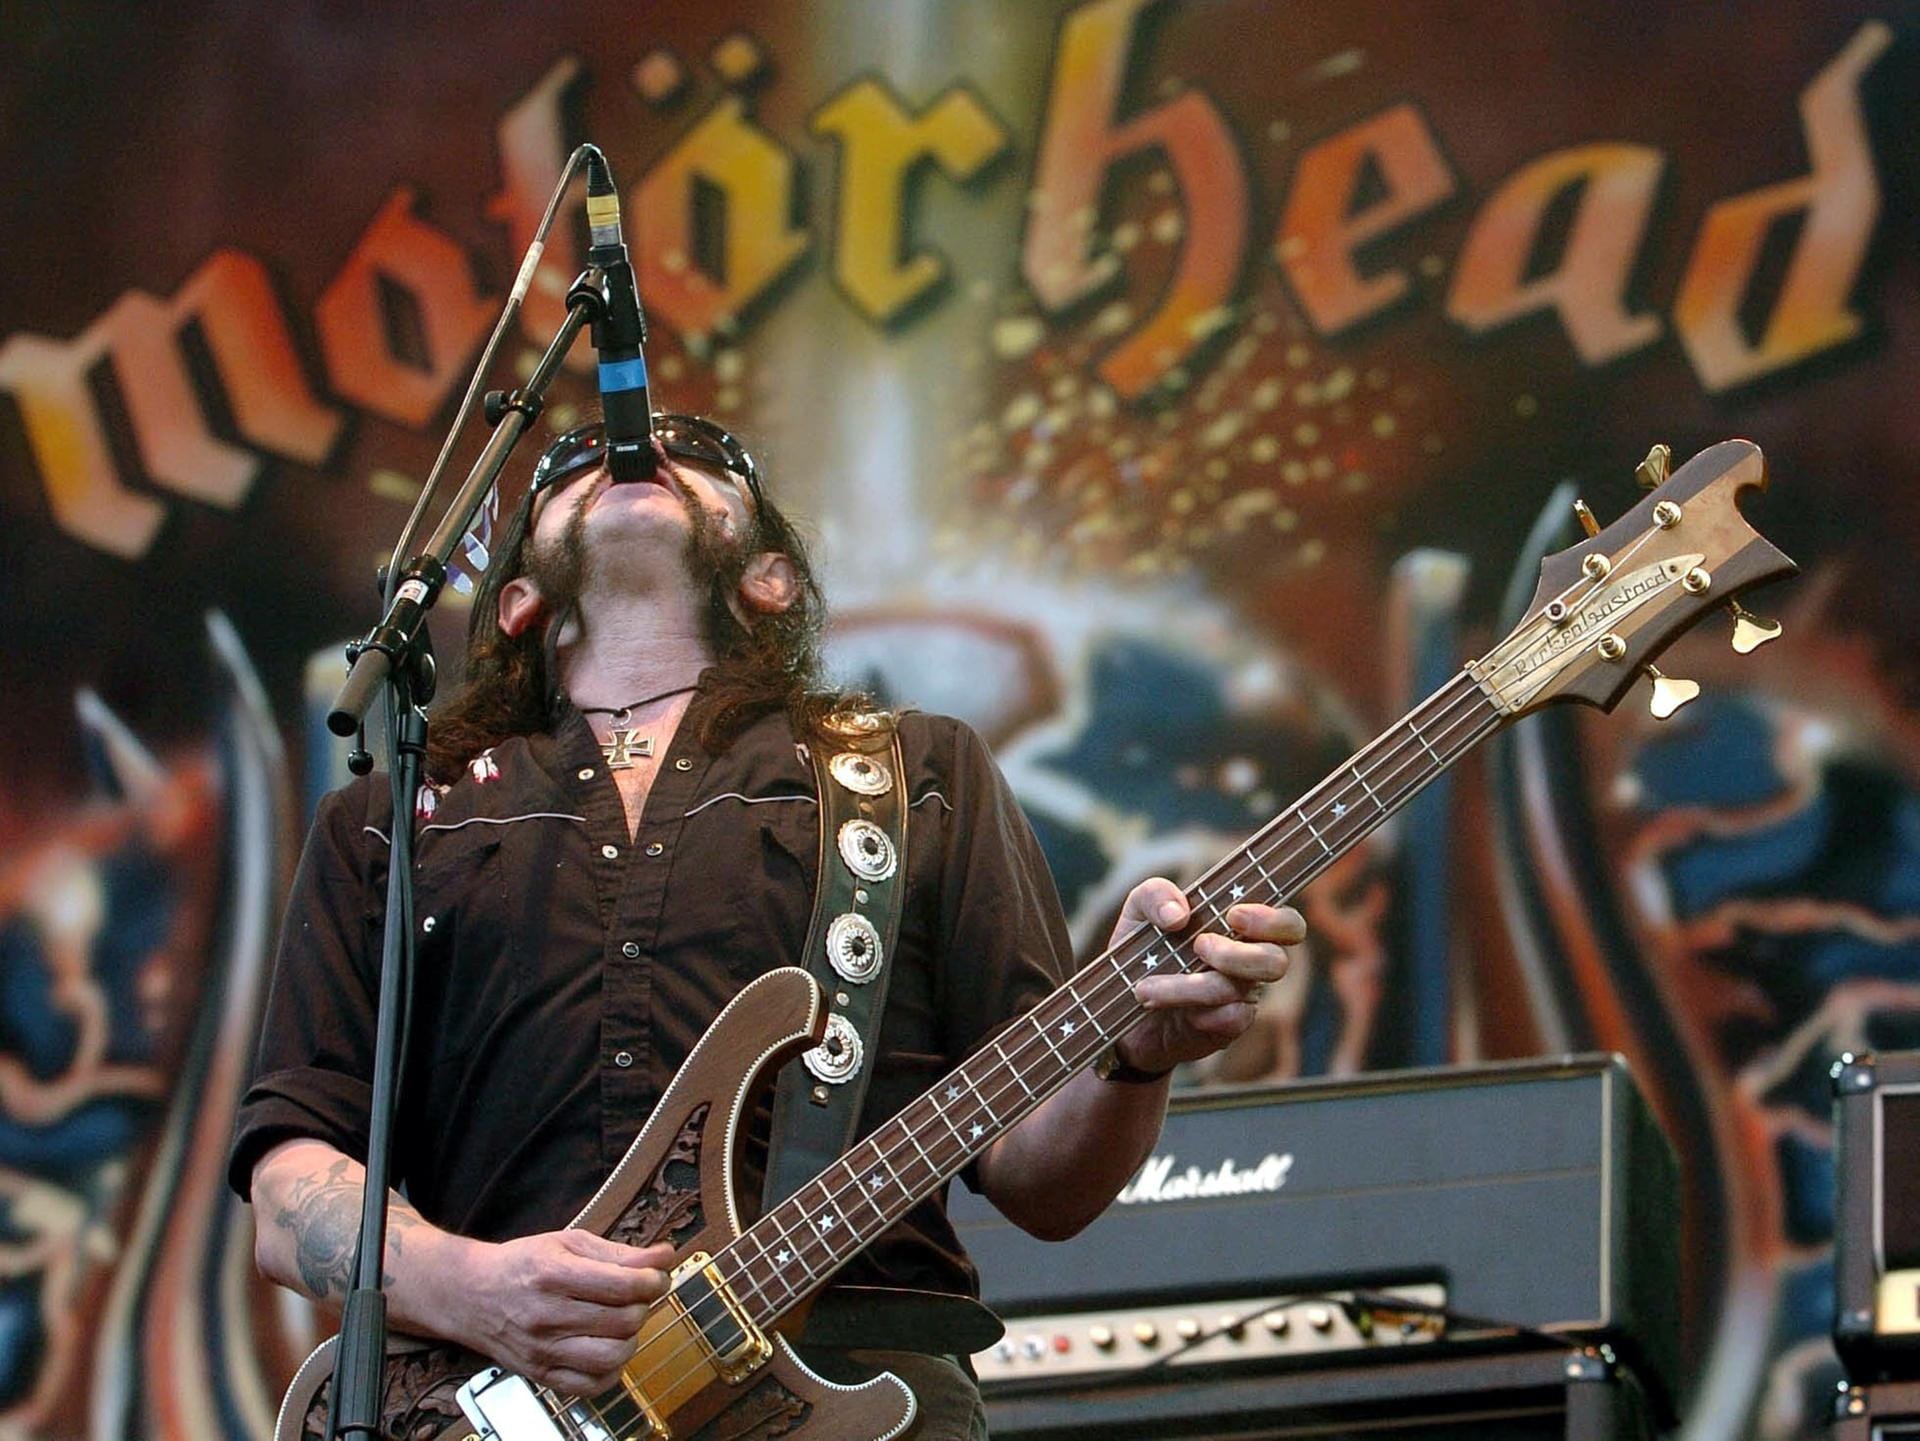 Lemmy Kilmister und Motörhead bei einem der zahlreichen Auftritte beim Festival "Rock am Ring".